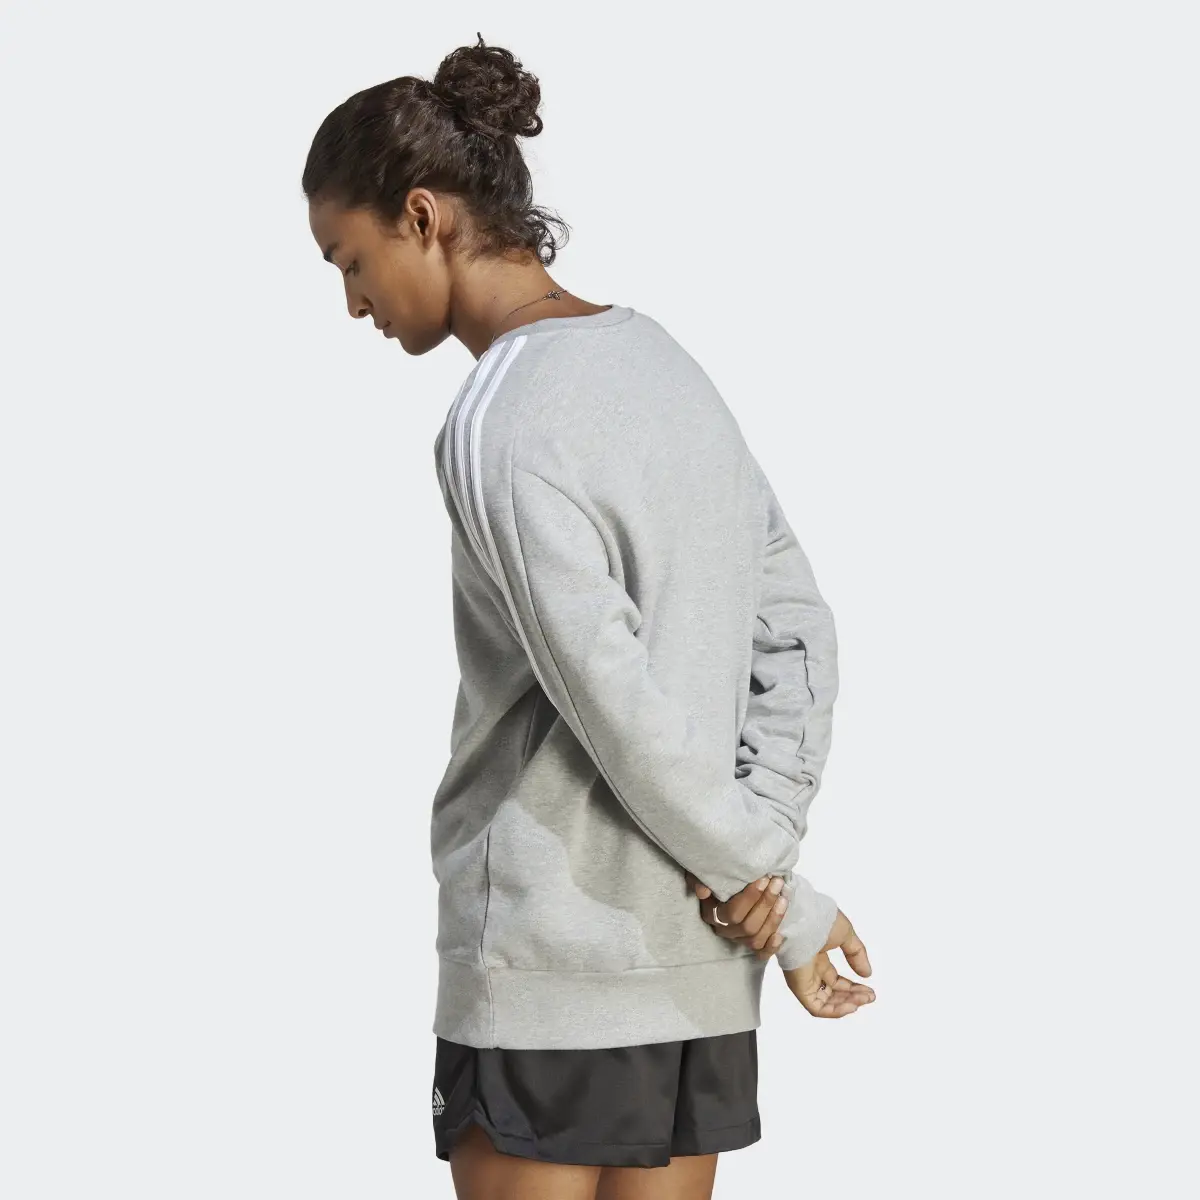 Adidas Essentials French Terry 3-Streifen Sweatshirt. 3